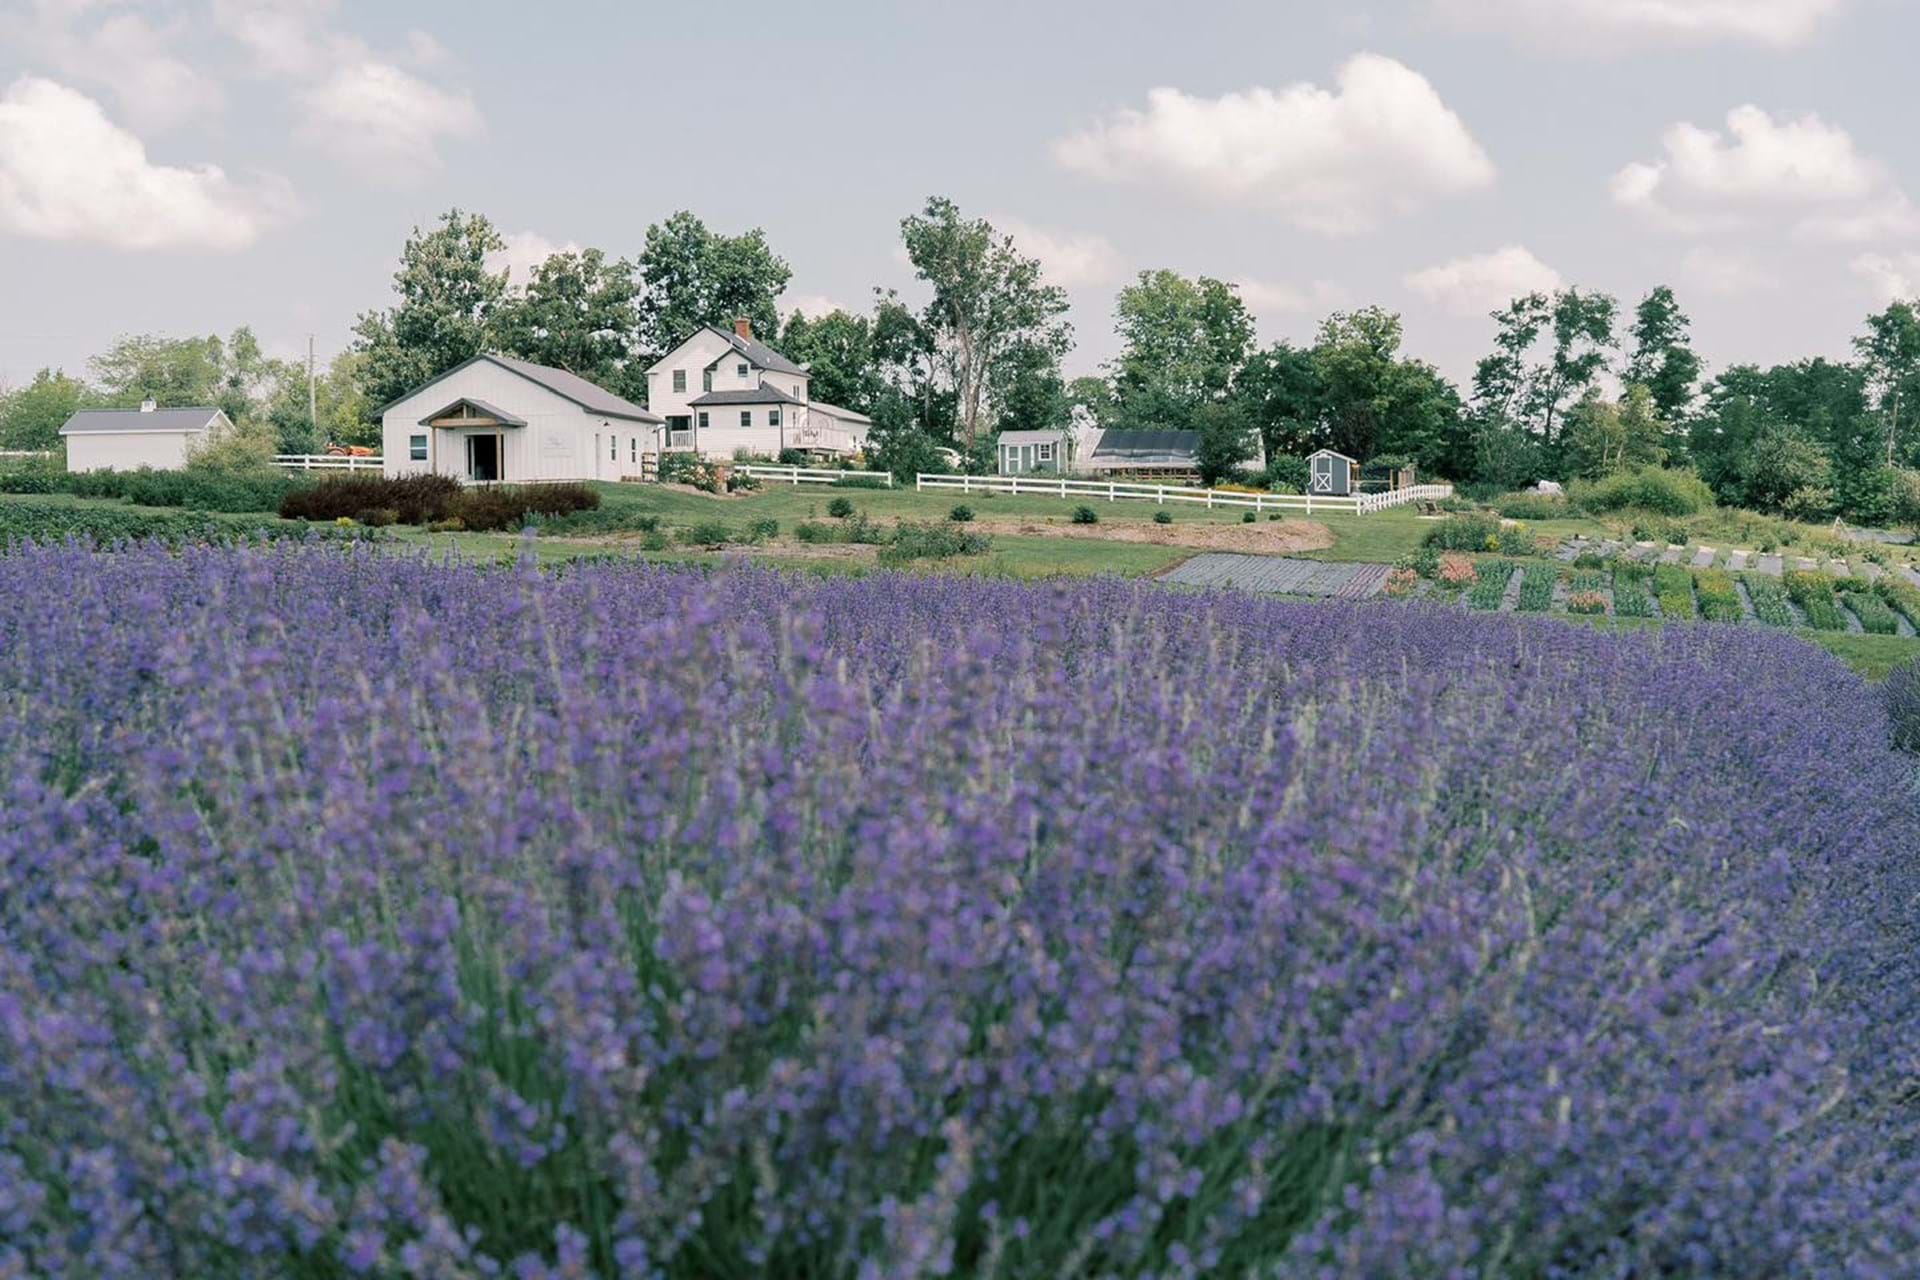 Lavender field at Pepperharrow Farm in Winterset, Iowa